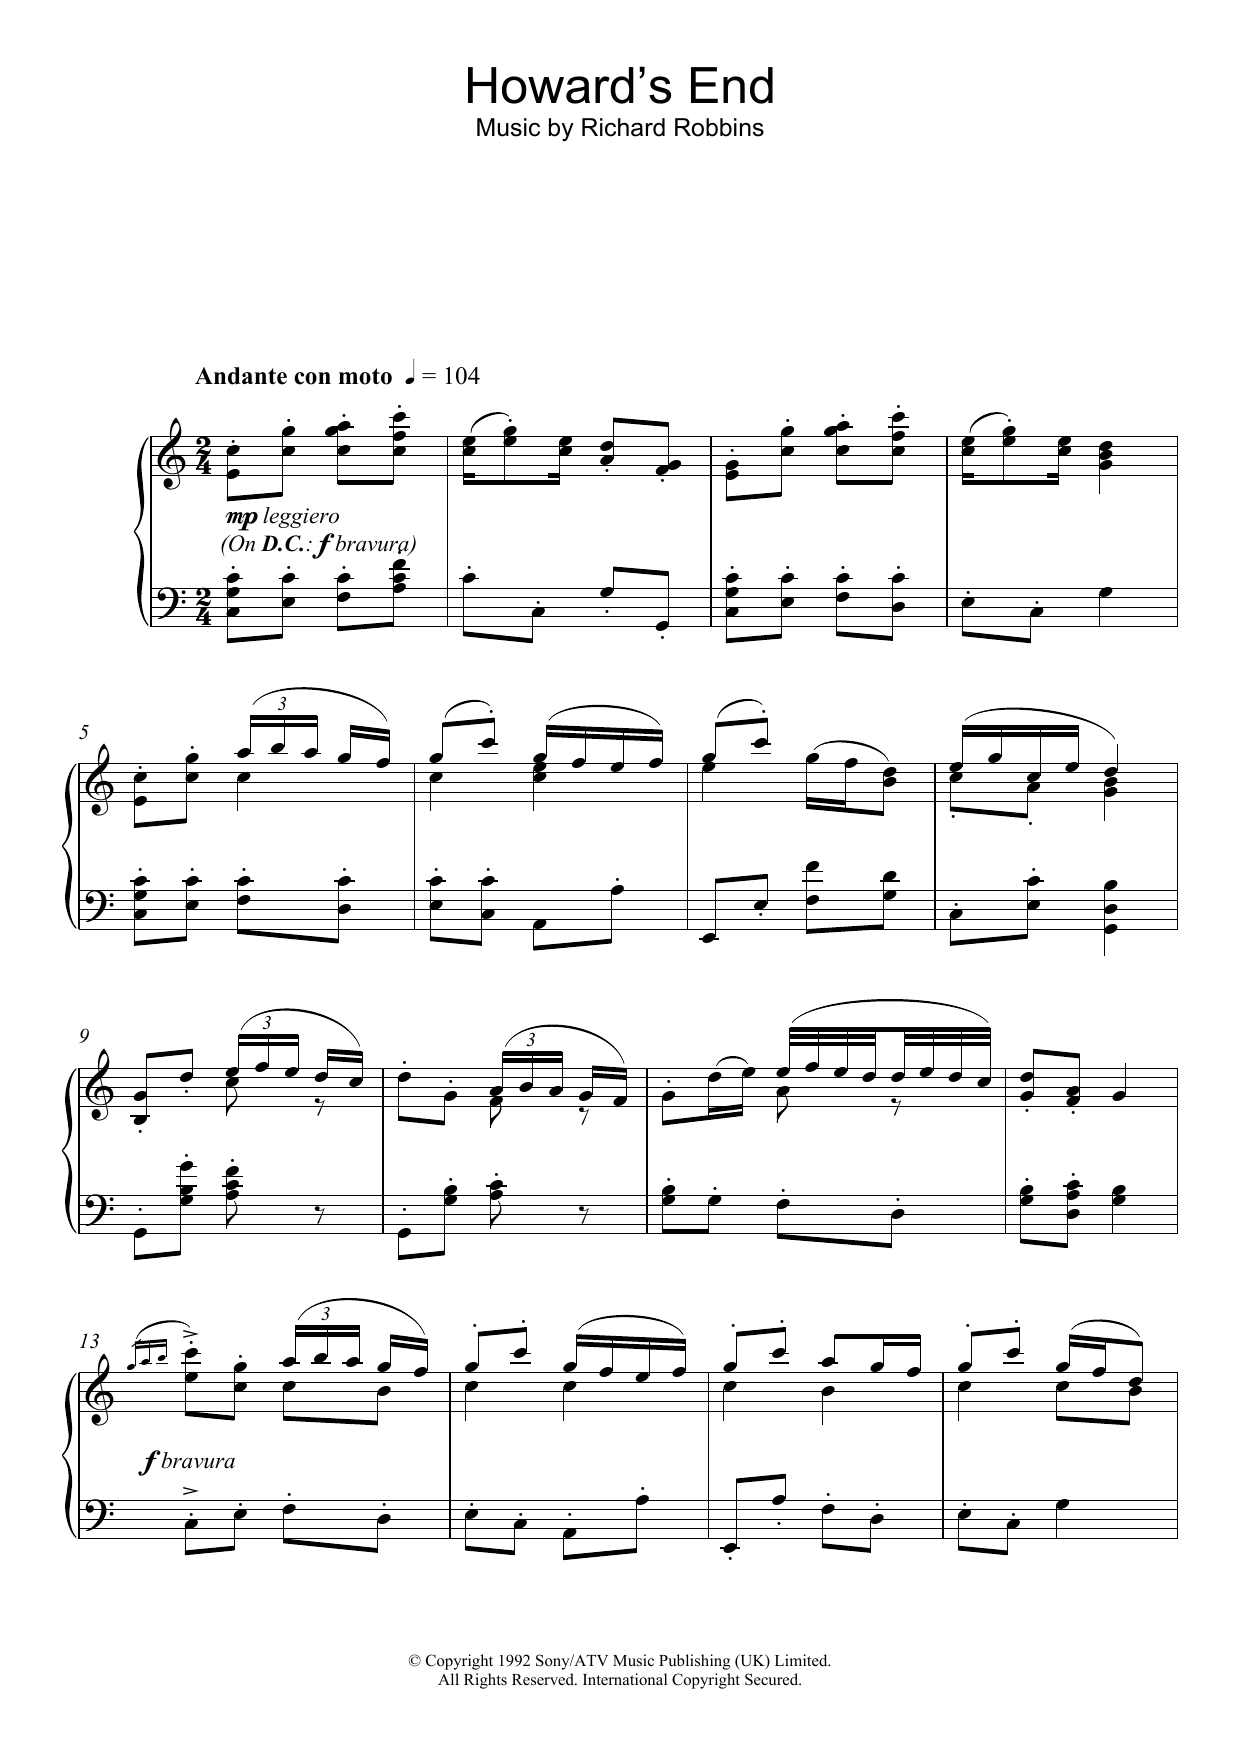 Richard Robbins Howard's End (Closing Credits) Sheet Music Notes & Chords for Piano - Download or Print PDF